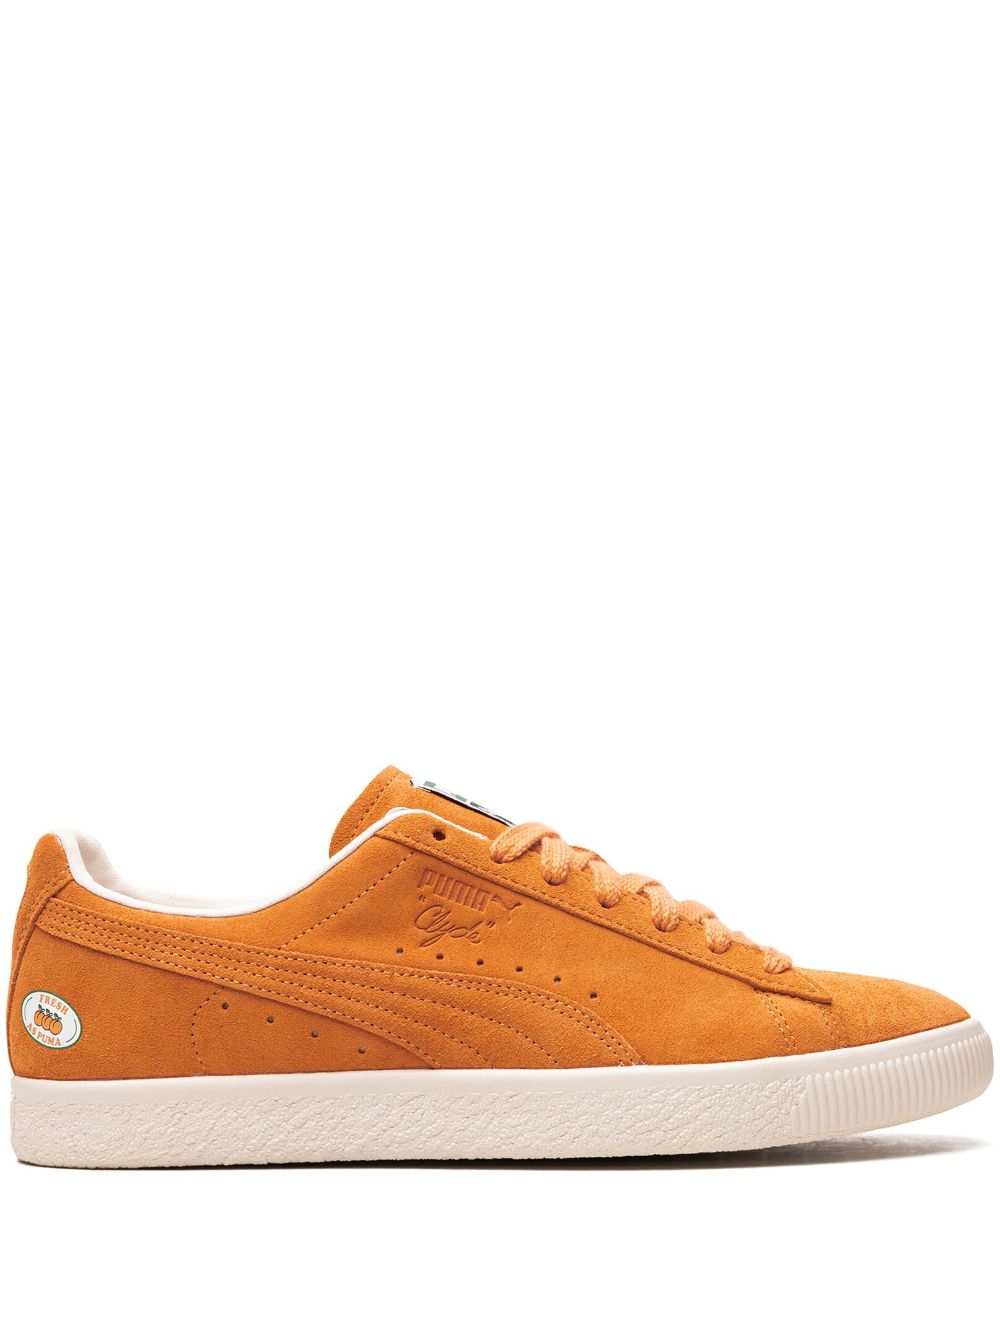 PUMA Clyde ATL sneakers - Orange von PUMA